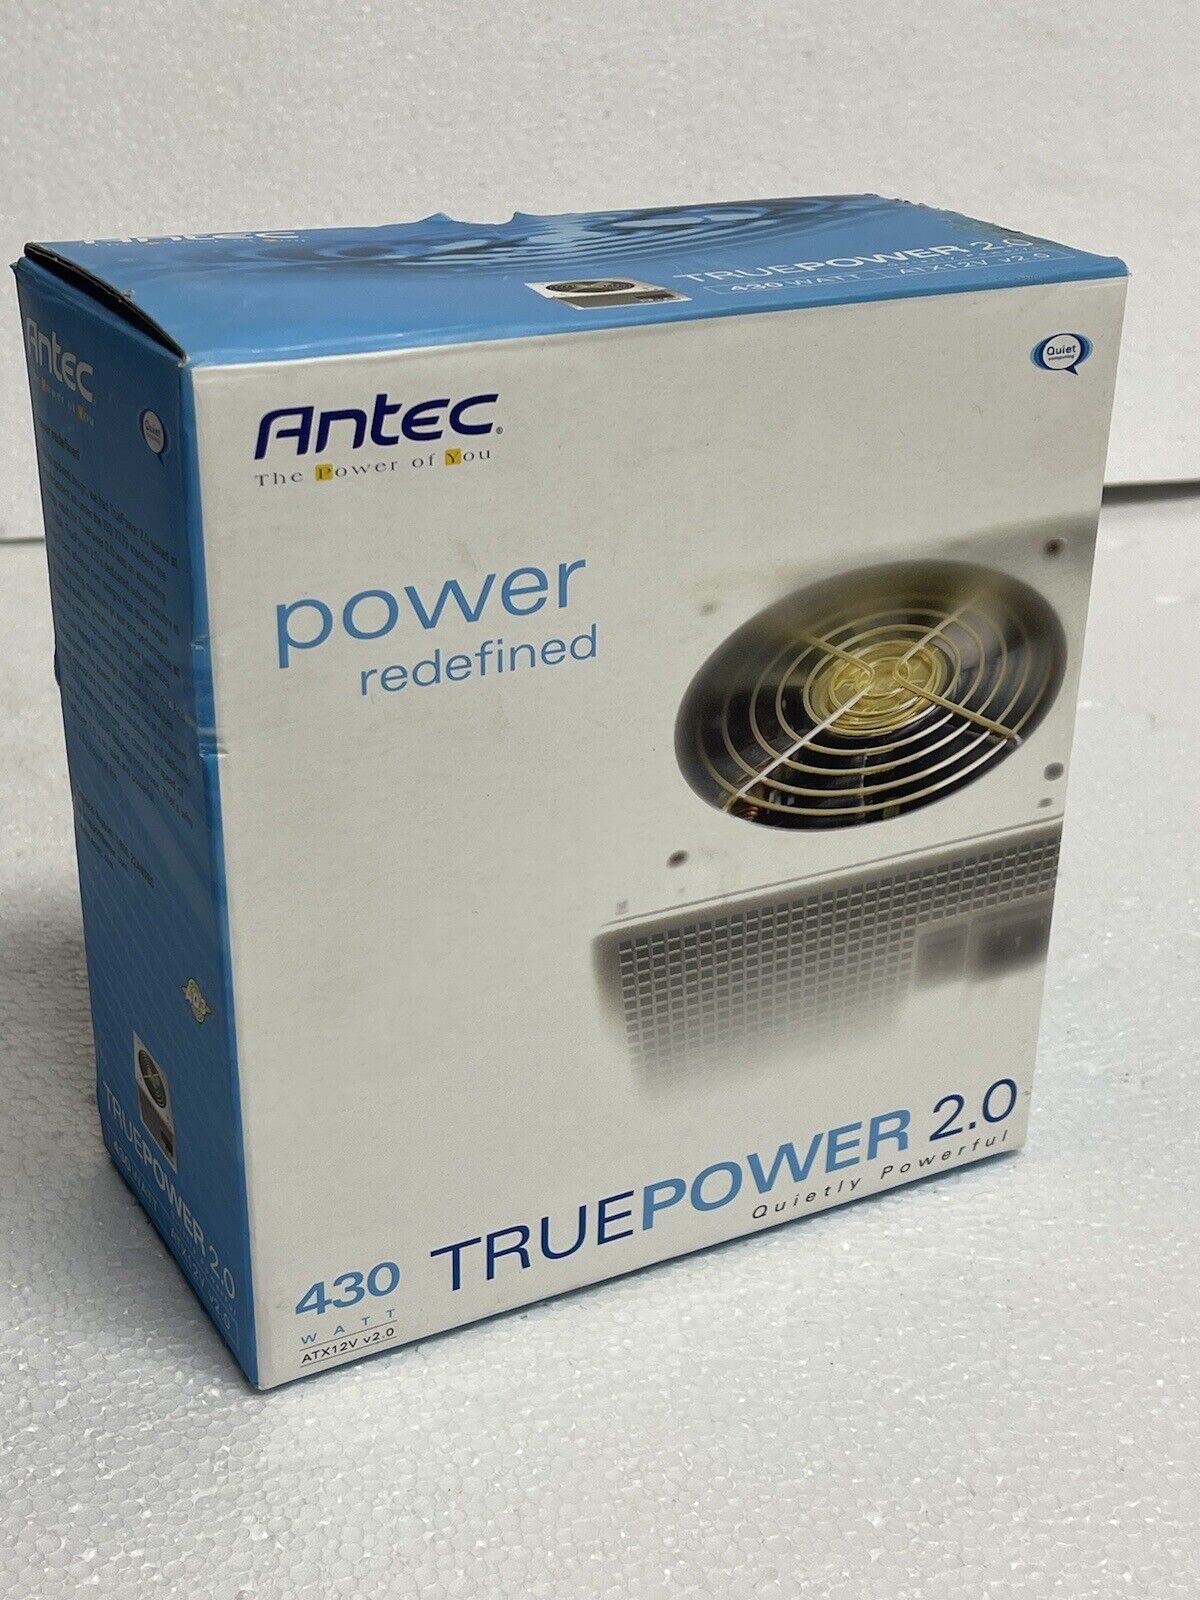 Antec TRUEPOWER 2.0 430 Watt power supply